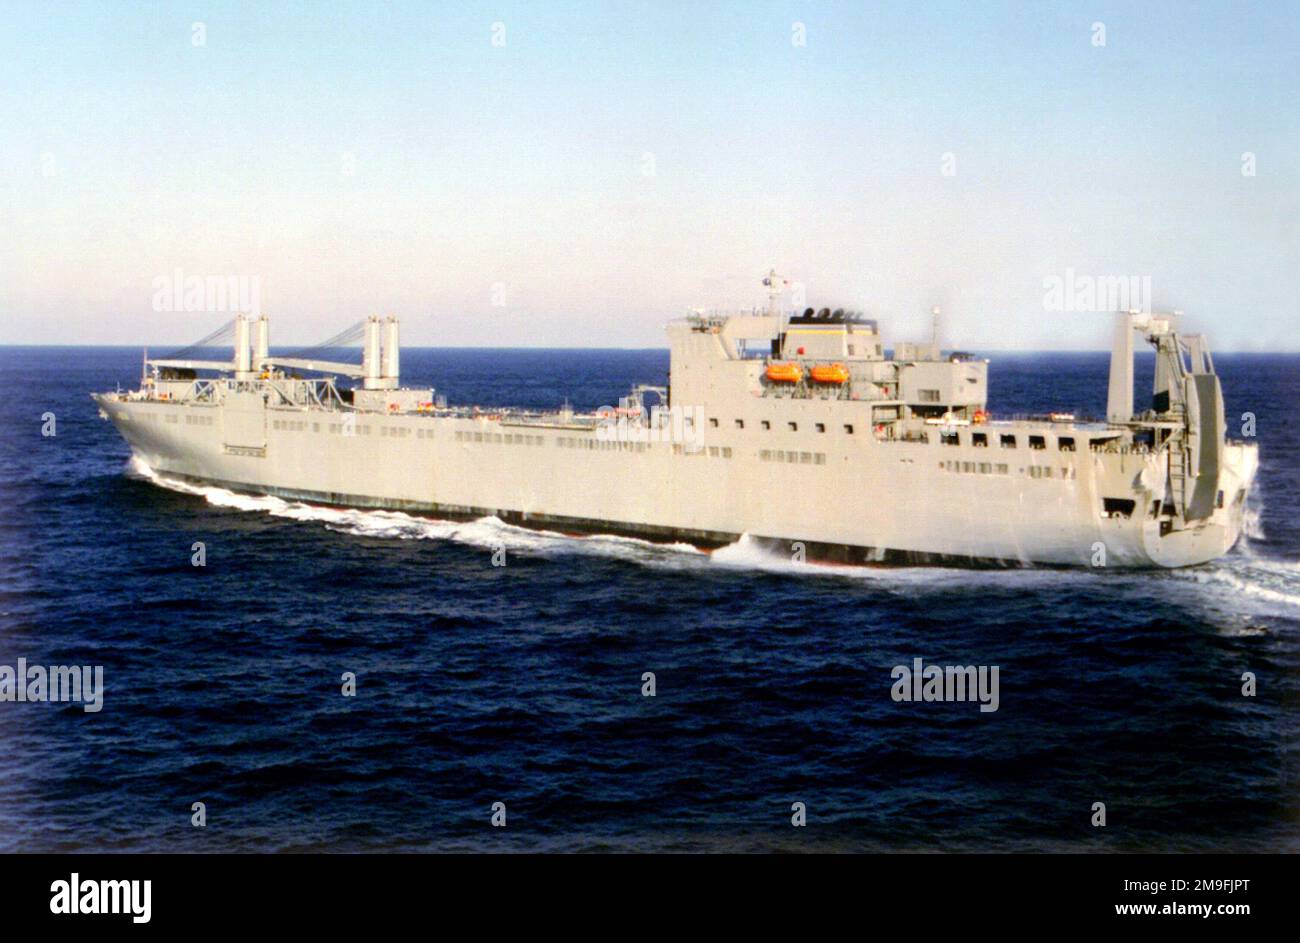 Niedrig schräge Hafenansicht (abseits der Mittellinie) des strategischen Schwerhubschiffs der Bob-Hope-Klasse USNS MENDONCA (T-AKR 303) auf See, das auf dem Weg ist. Land: Golf Von Mexiko Stockfoto